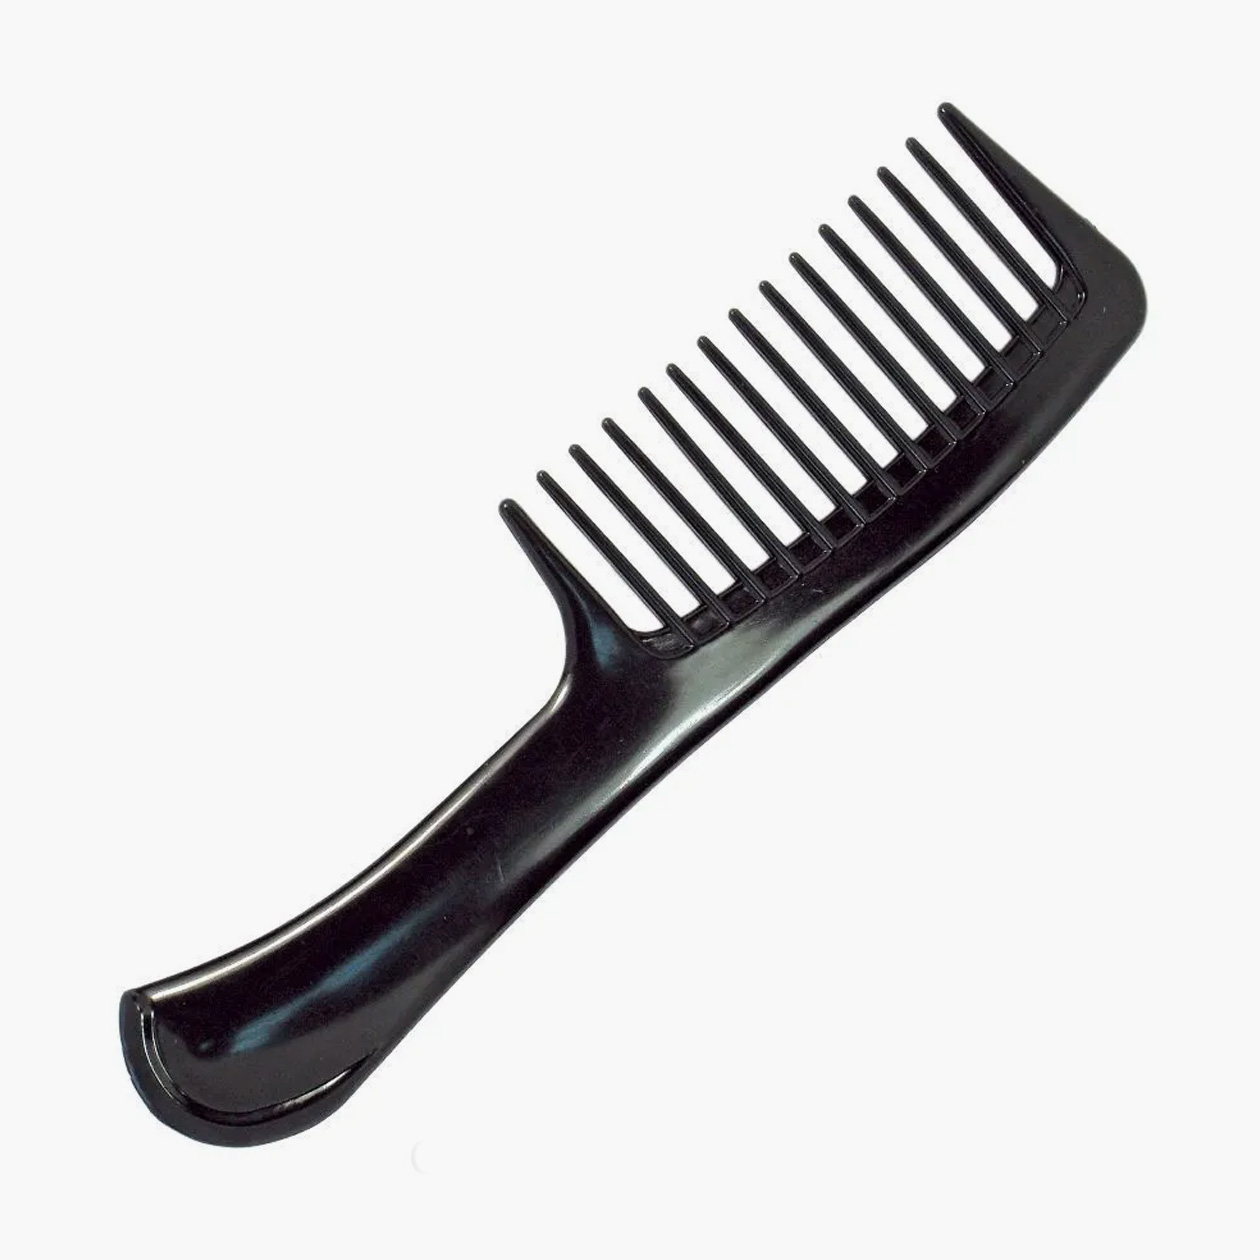 Многим людям с прямыми волосами удобно пользоваться «редкозубой» расческой, которую парикмахеры используют для укладки и мелирования. Стоимость таких расчесок начинается от 250 ₽. Источник: ozon.ru